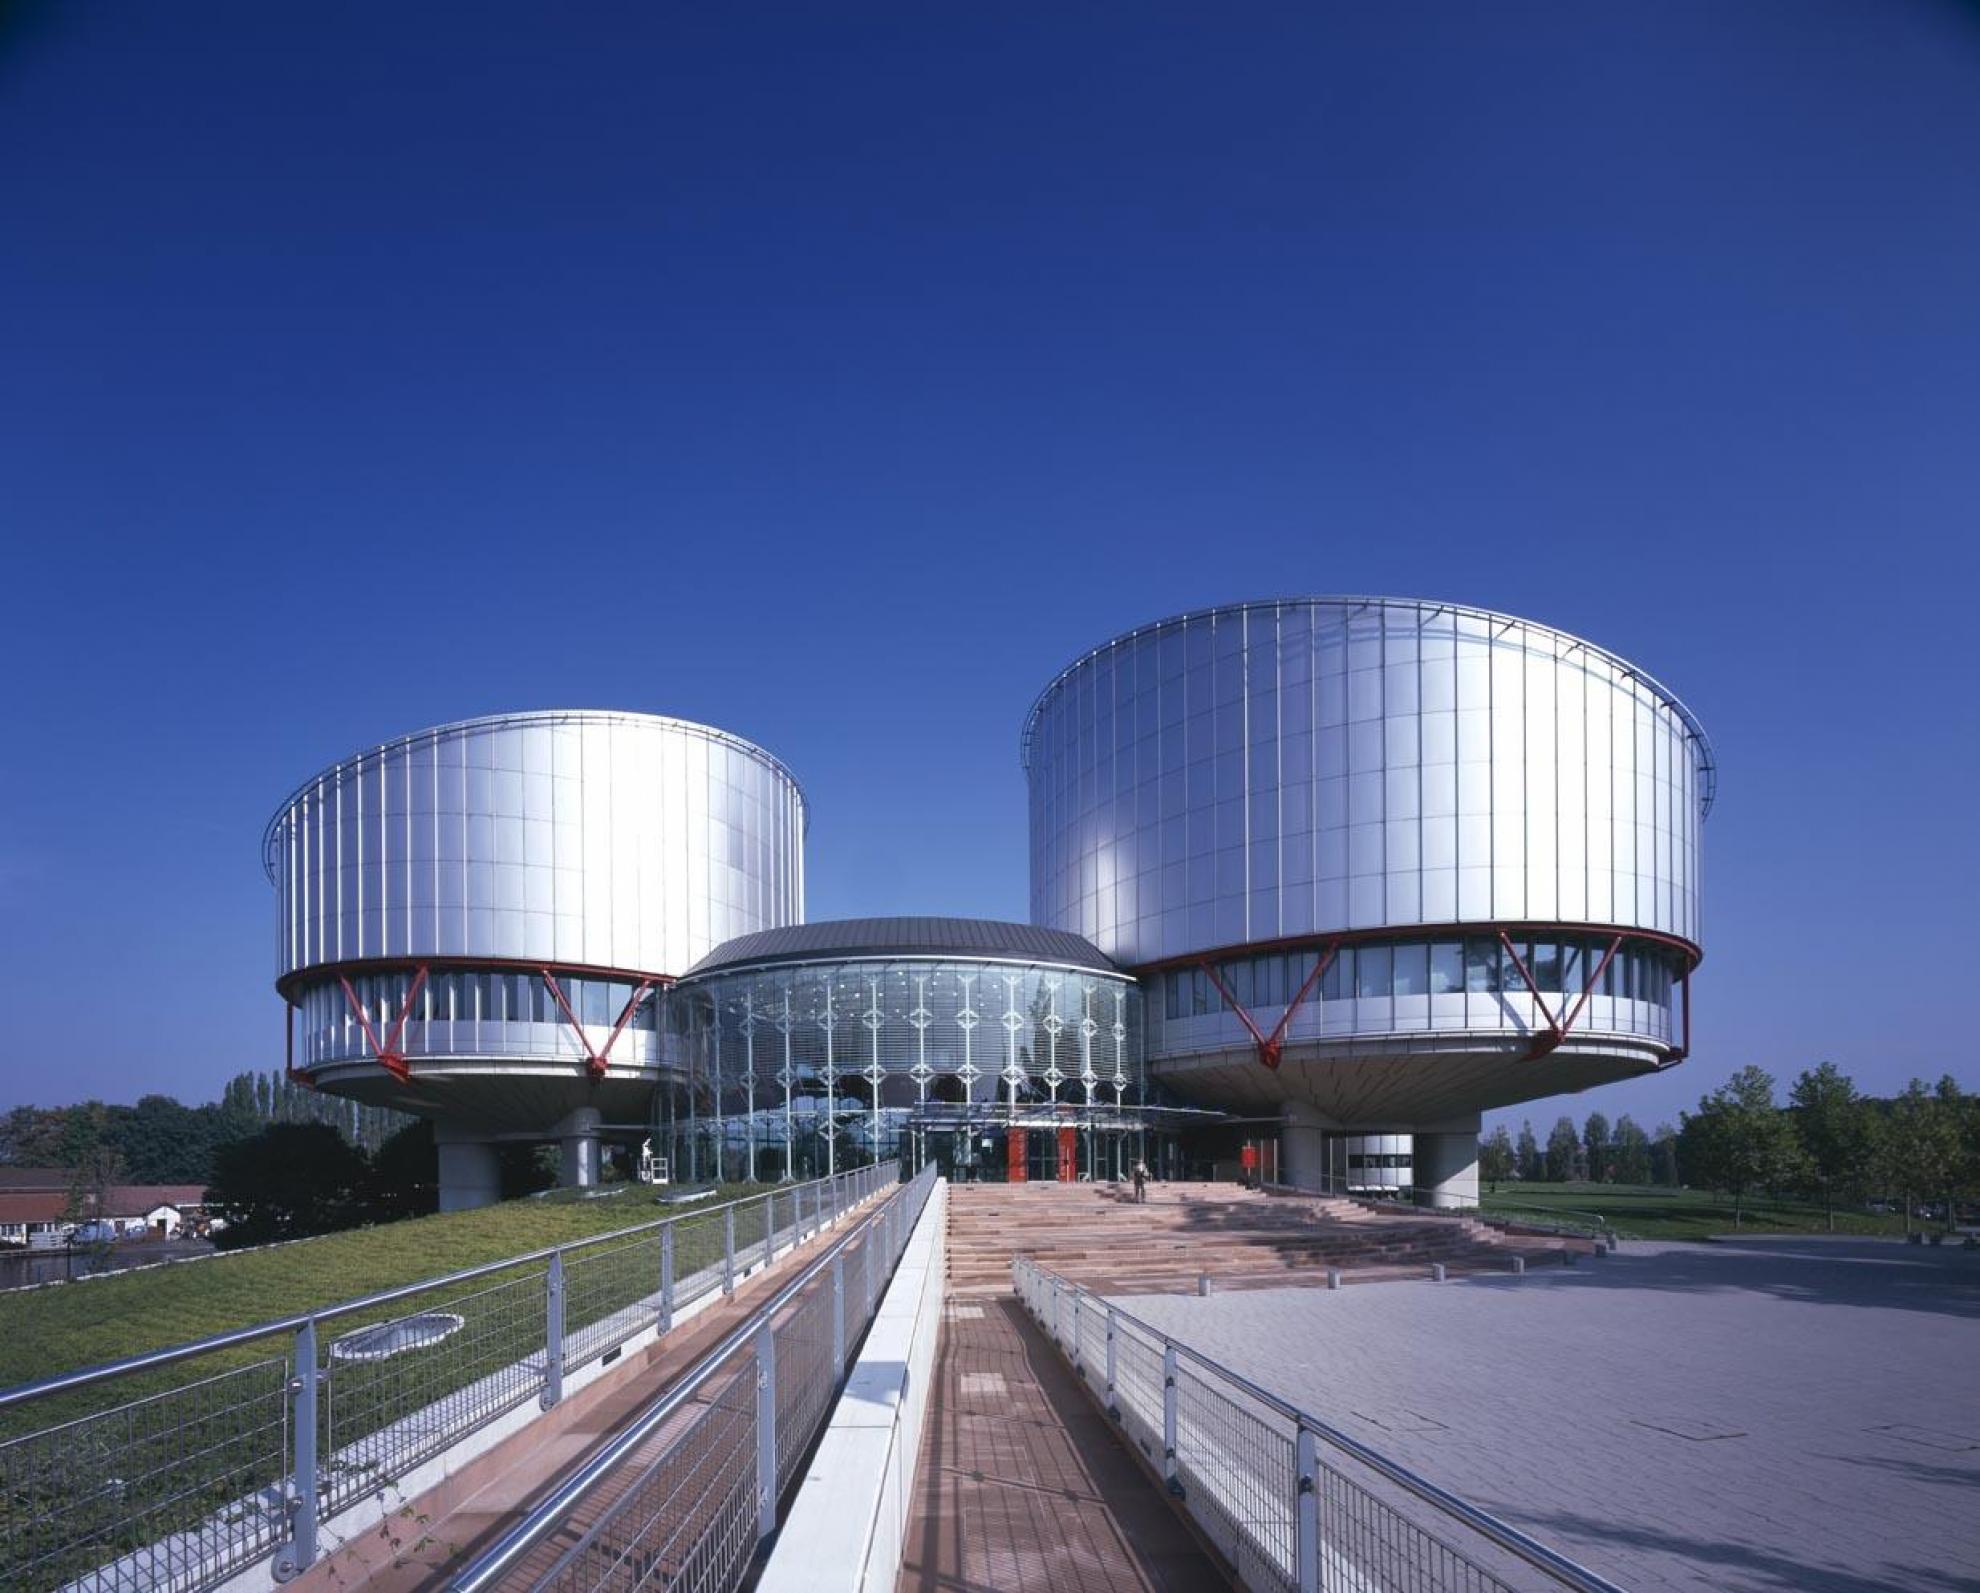 Международный европейский суд. Европейский суд по правам человека в Страсбурге. Здание ЕСПЧ В Страсбурге. Европейский суд по правам человека в Страсбурге (1984). Здание европейского суда по правам человека в Страсбурге фото.